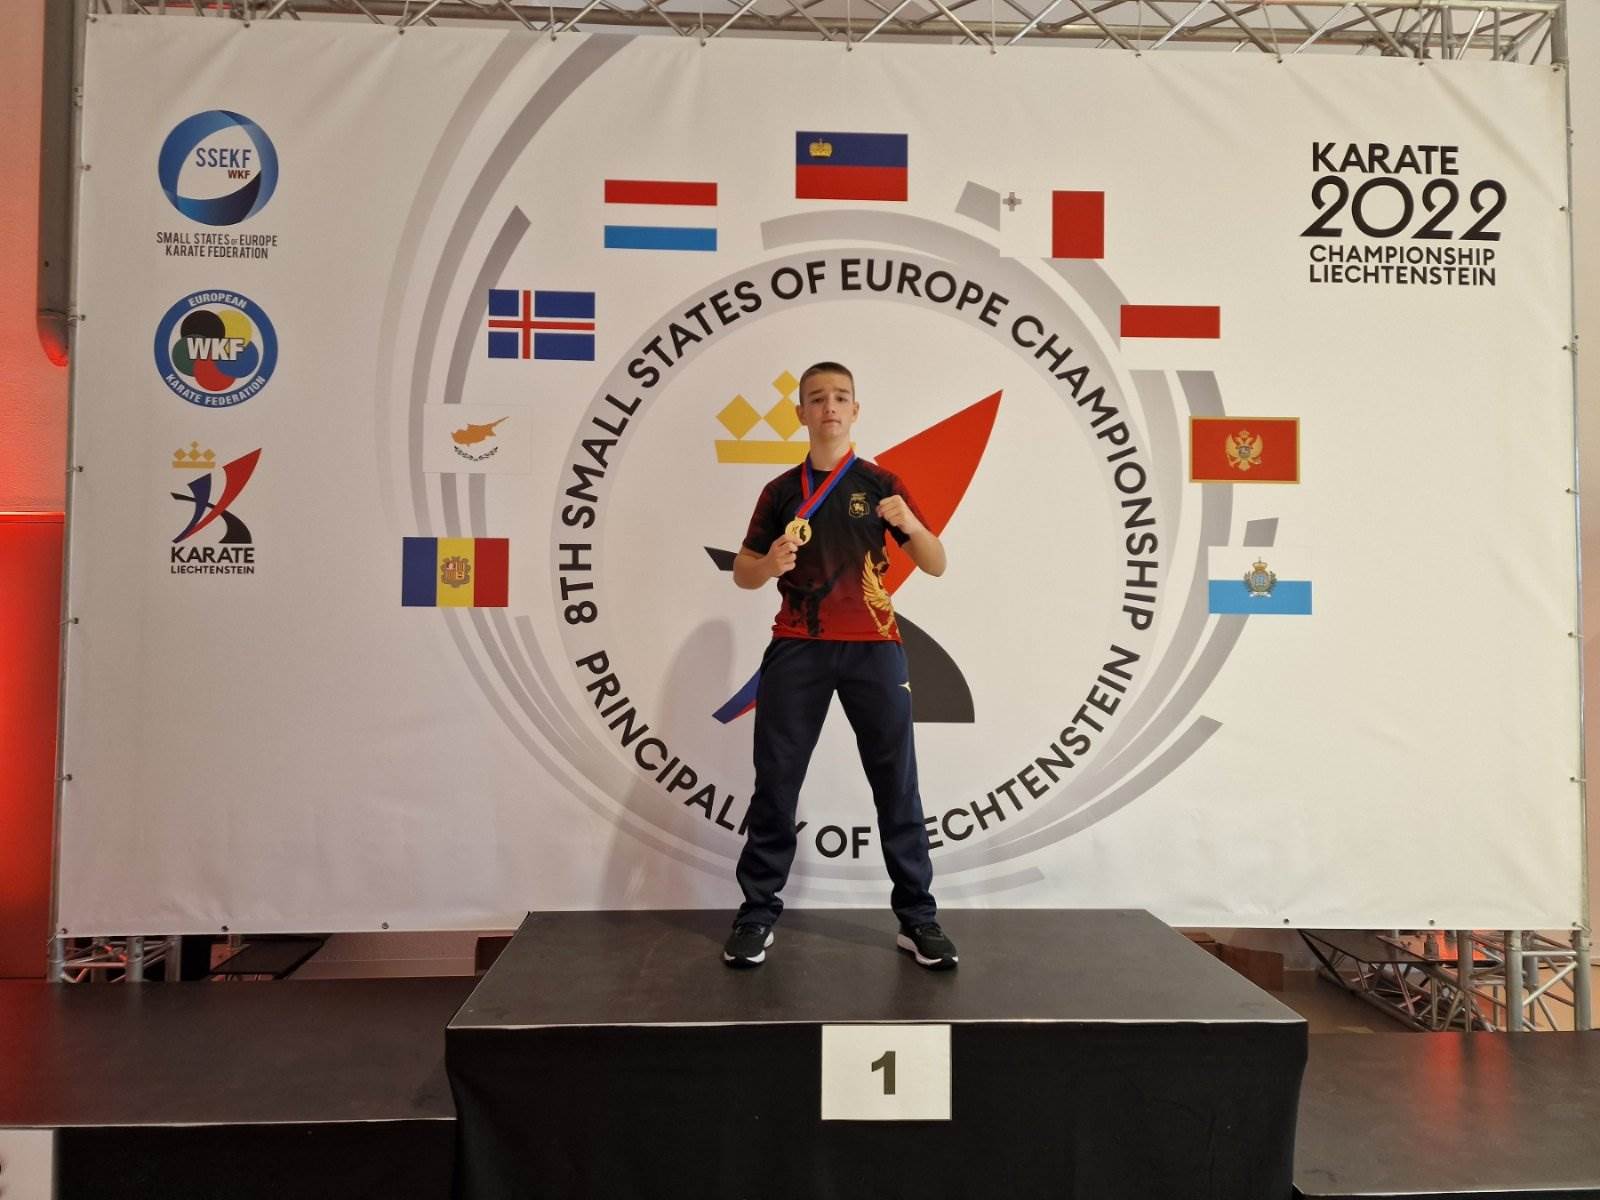  Karatisti karate kluba “Iskra” zabilježili su izvanredne nastupe na Evropskom prvenstvu malih zemalj 